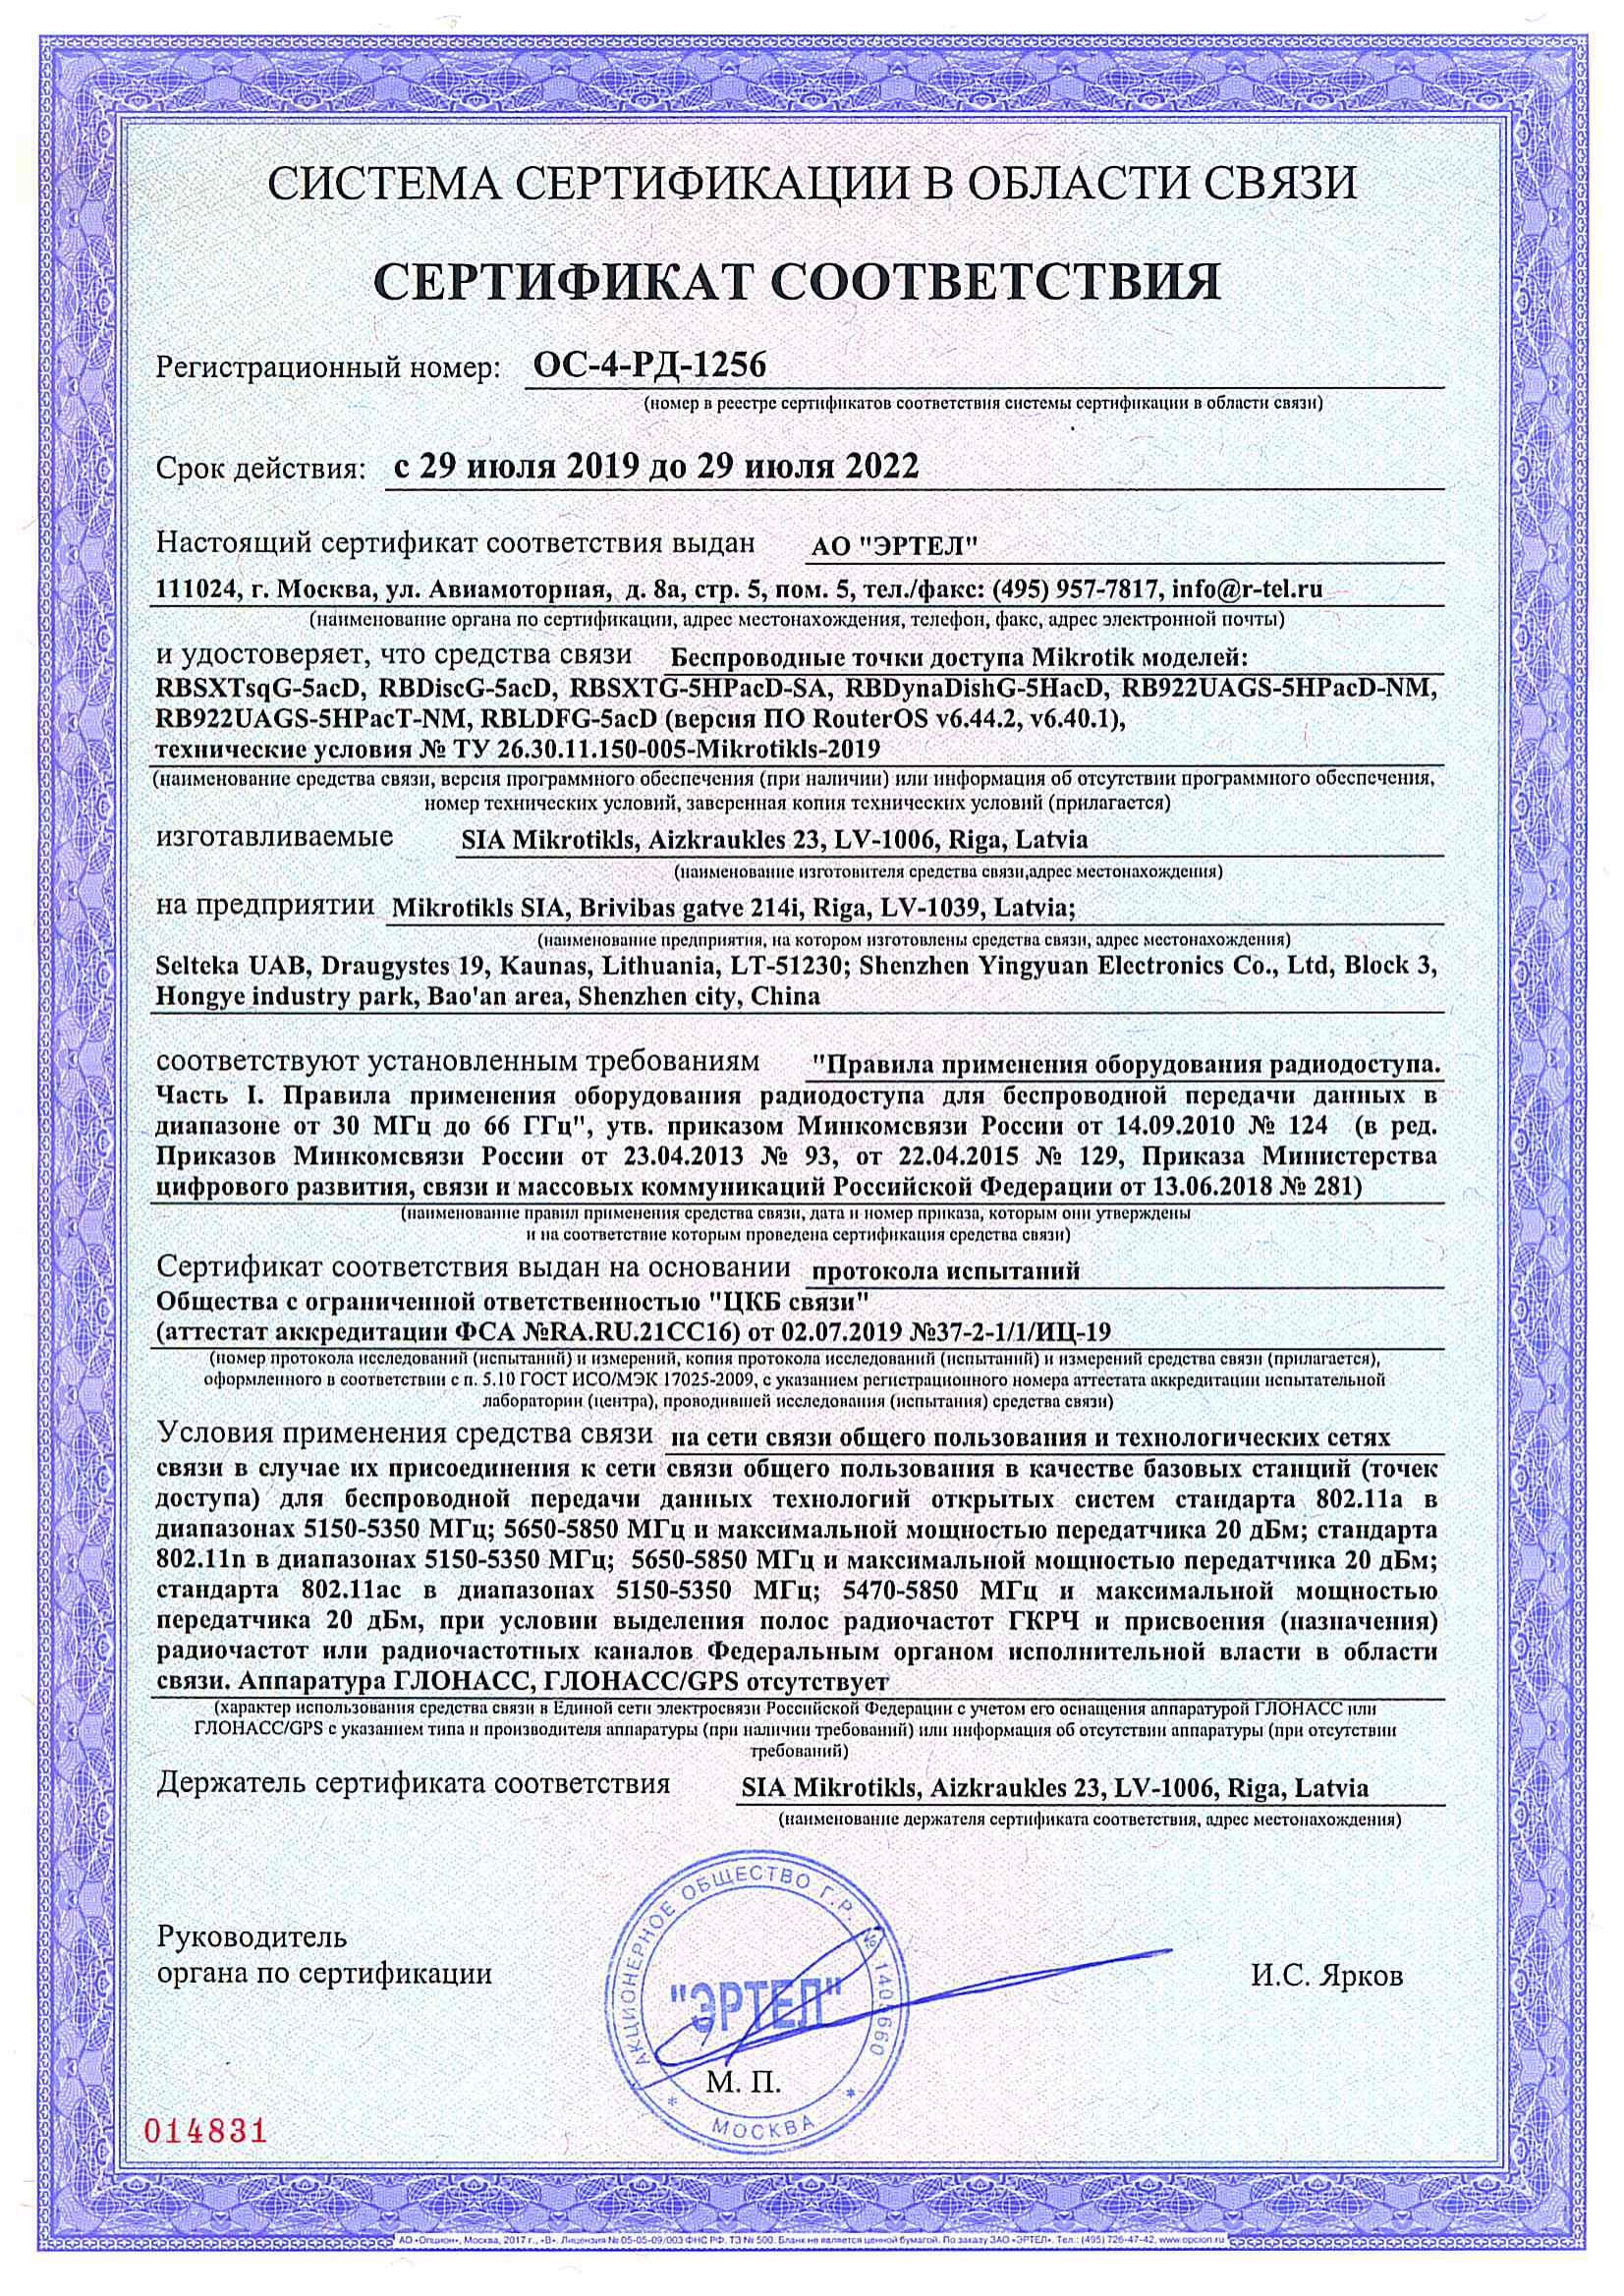 Сертификат соответствия в области связи ОС-4-РД-1256